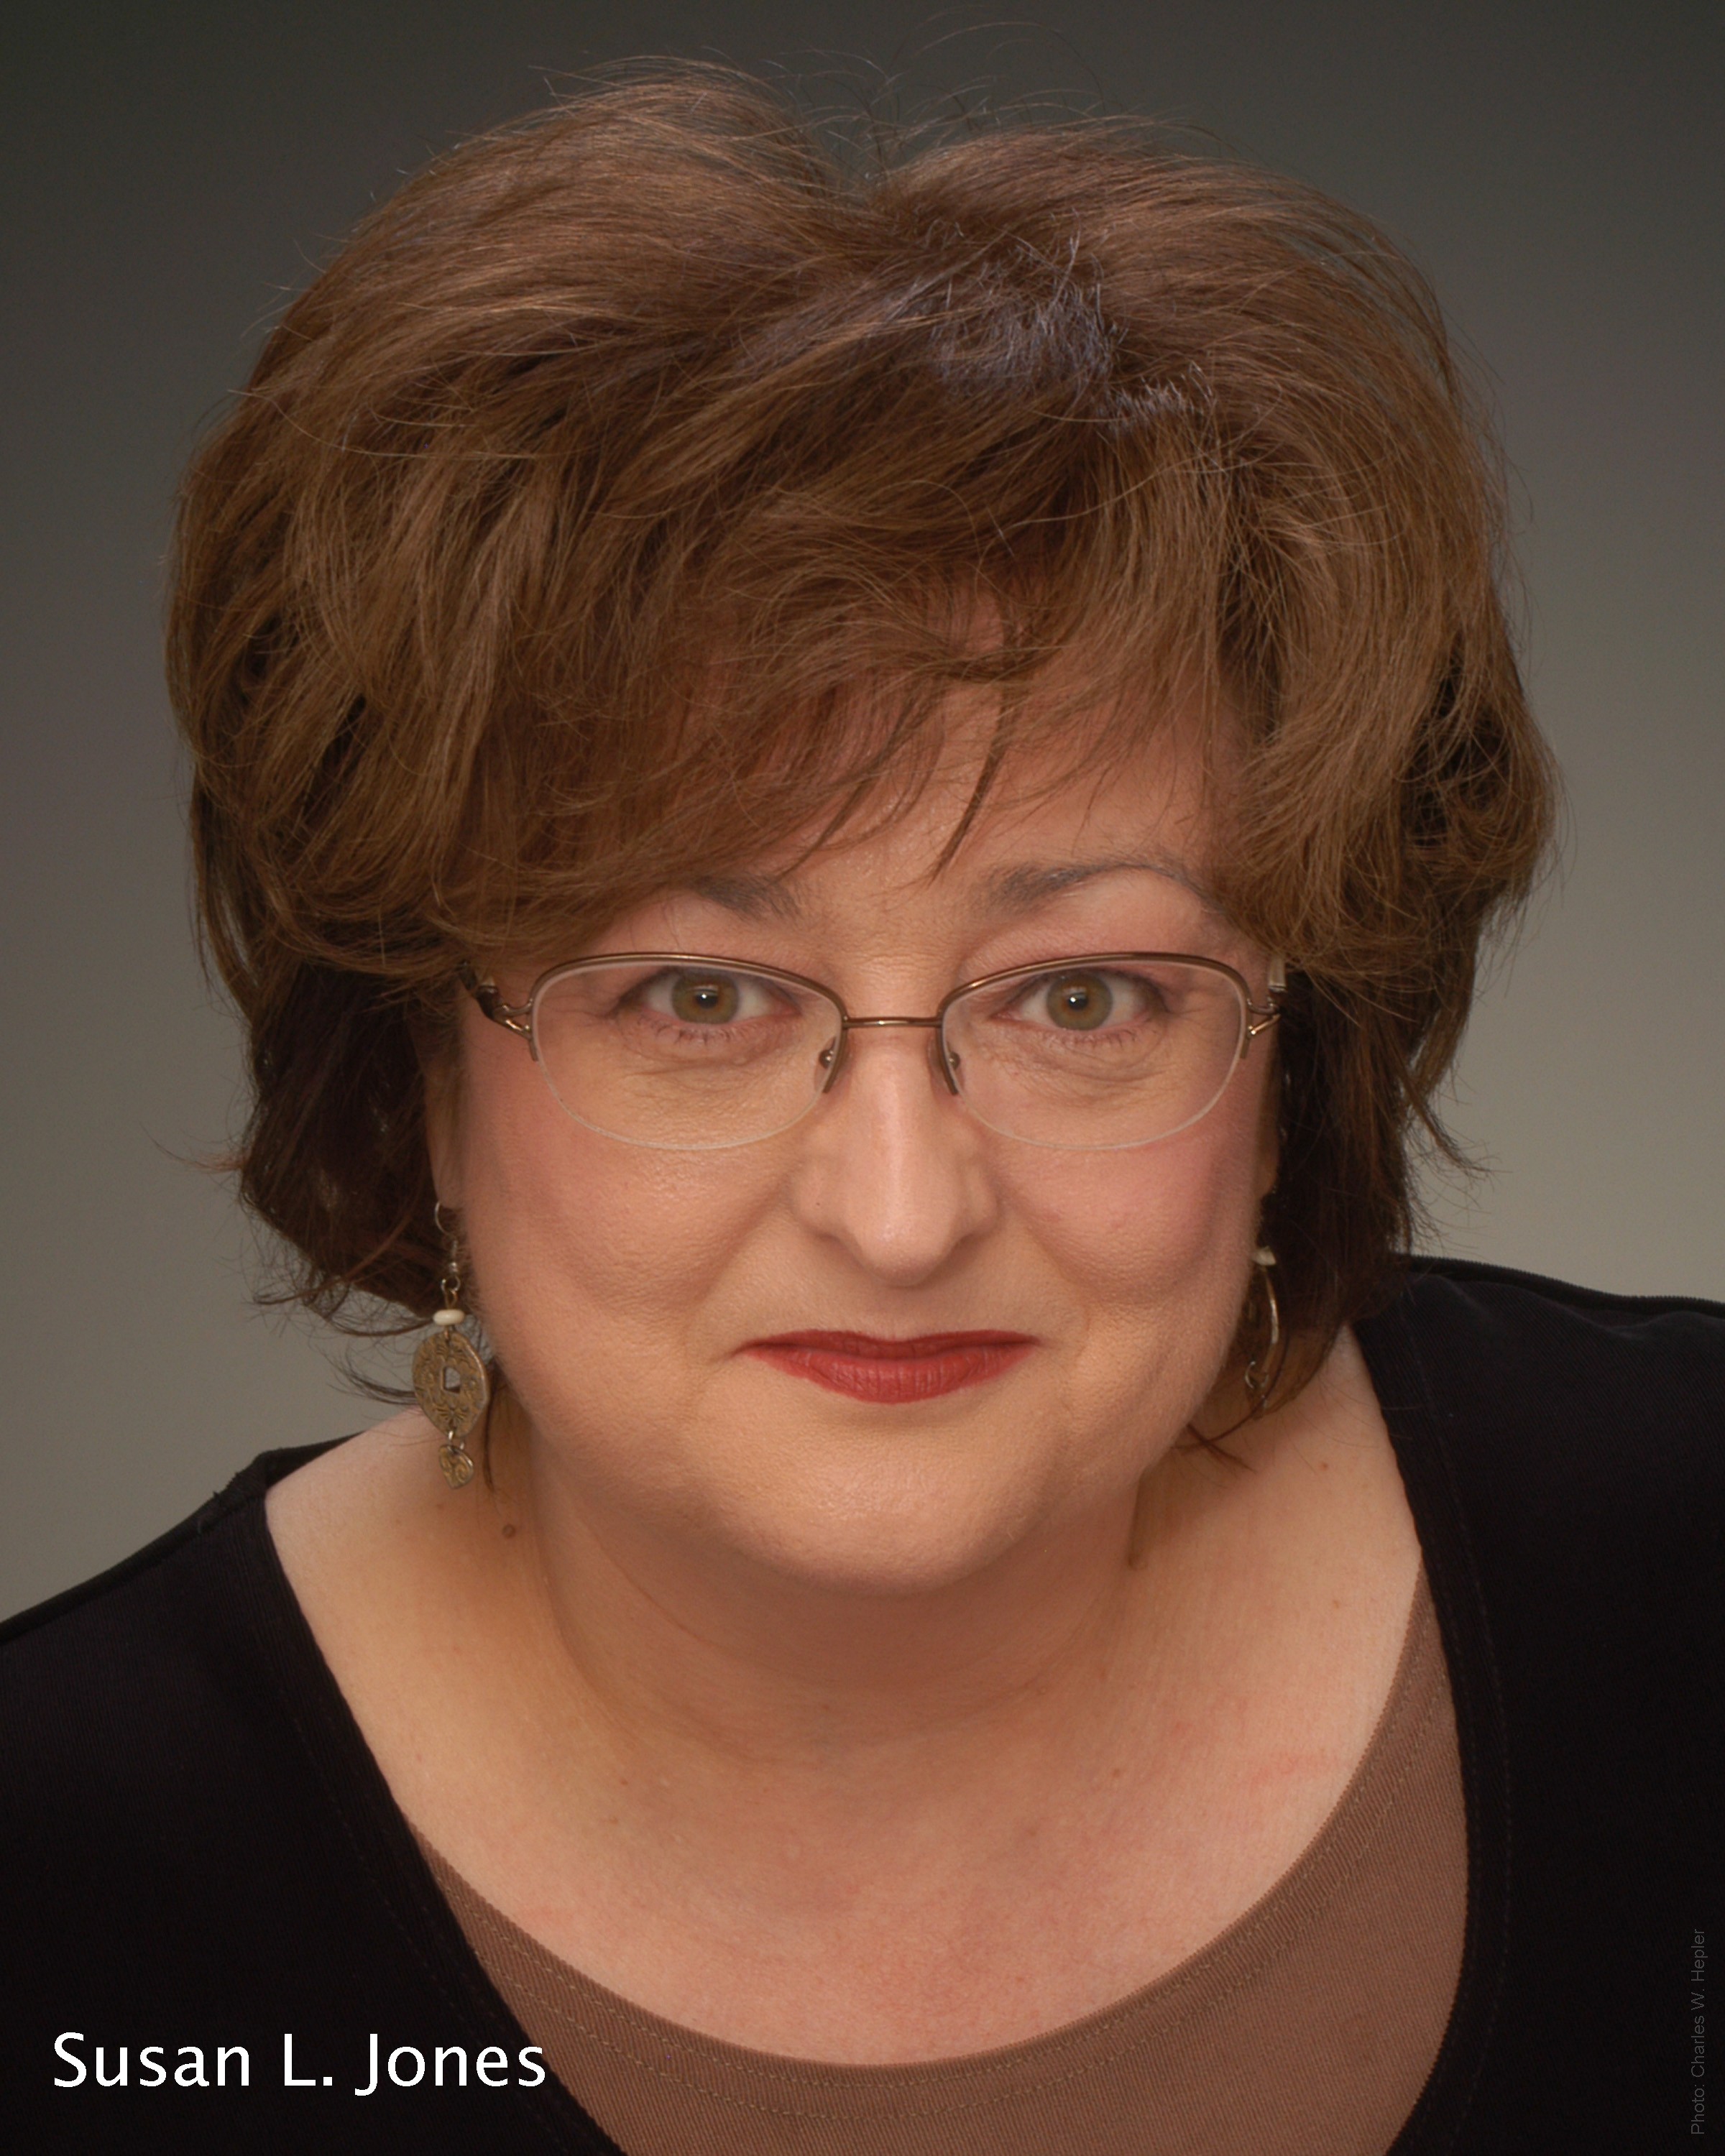 Susan L. Jones